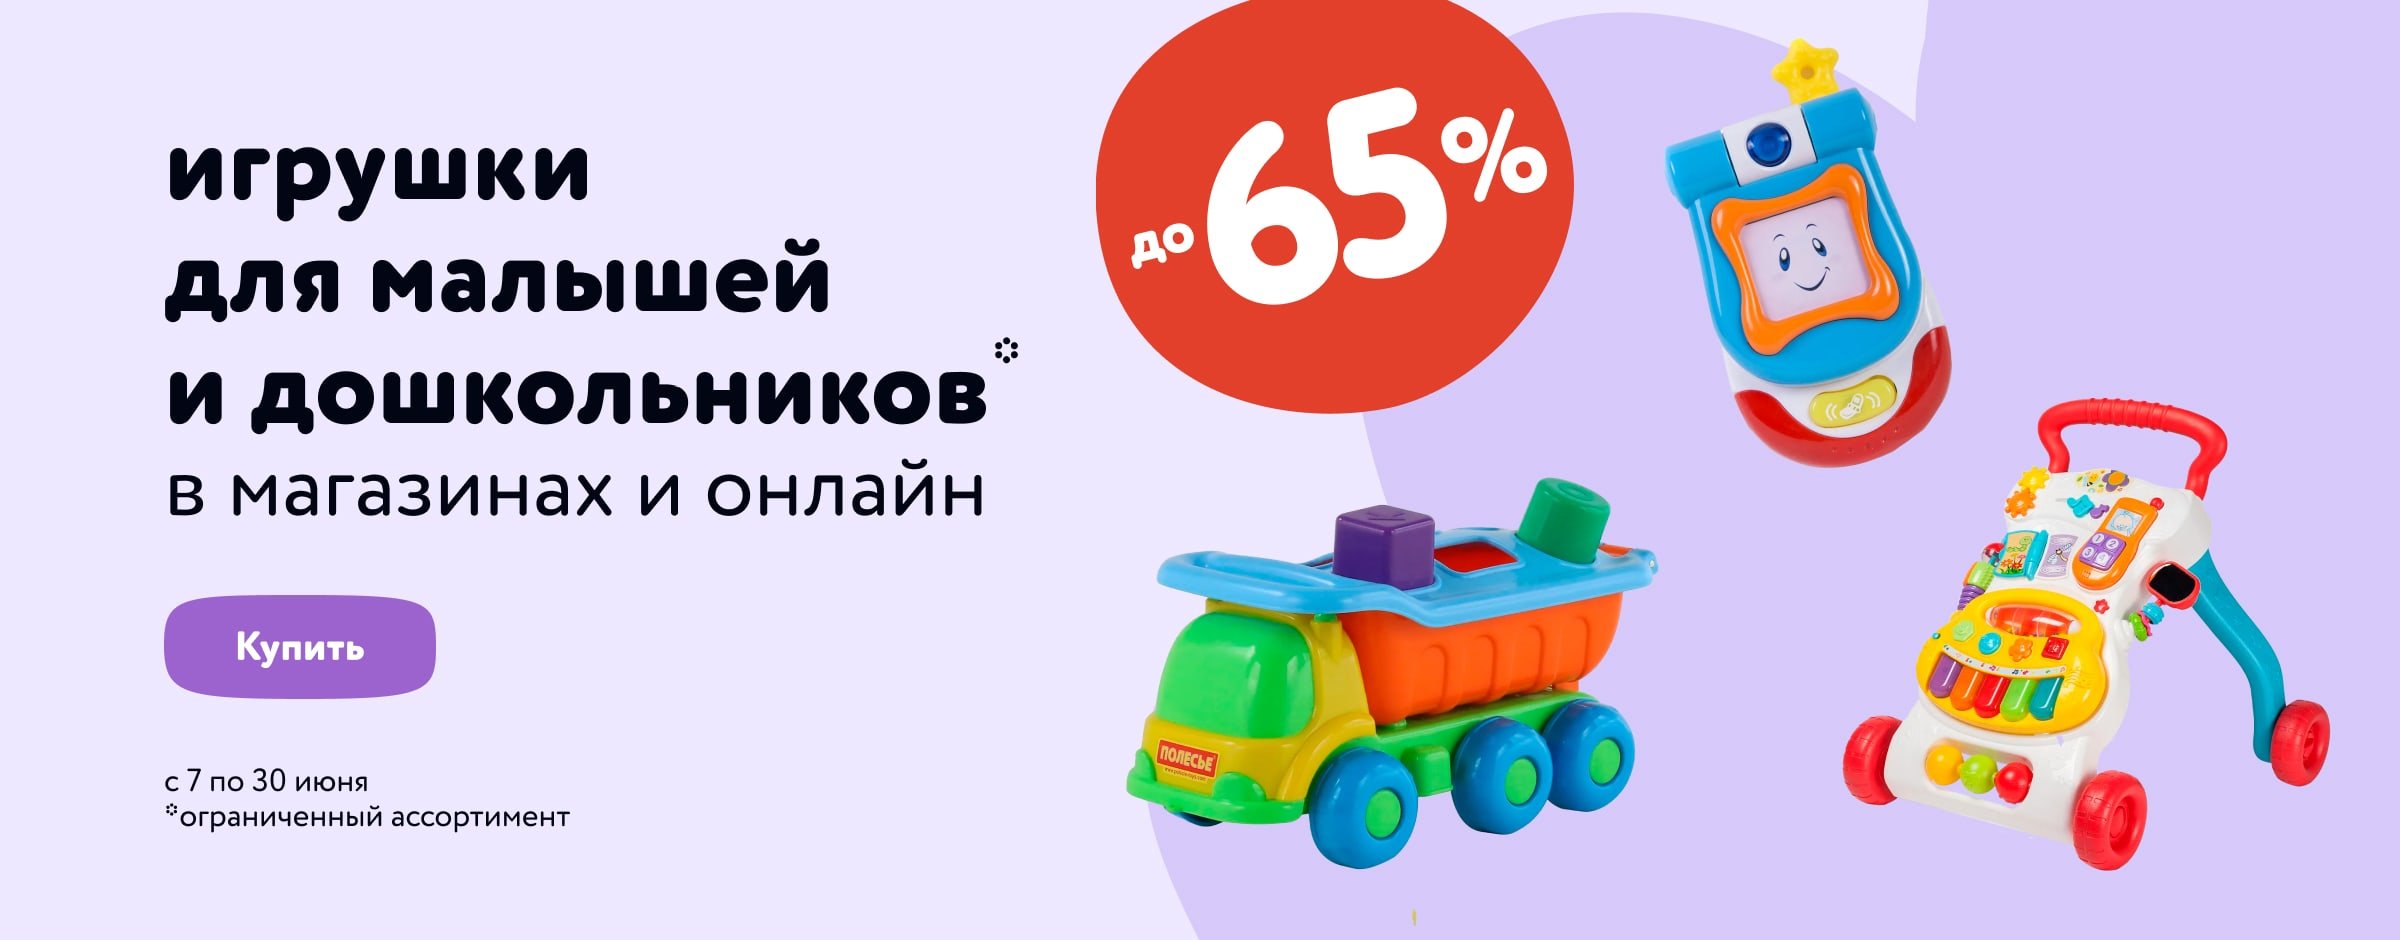 Скидки до 65% на игрушки для малышей и дошкольников